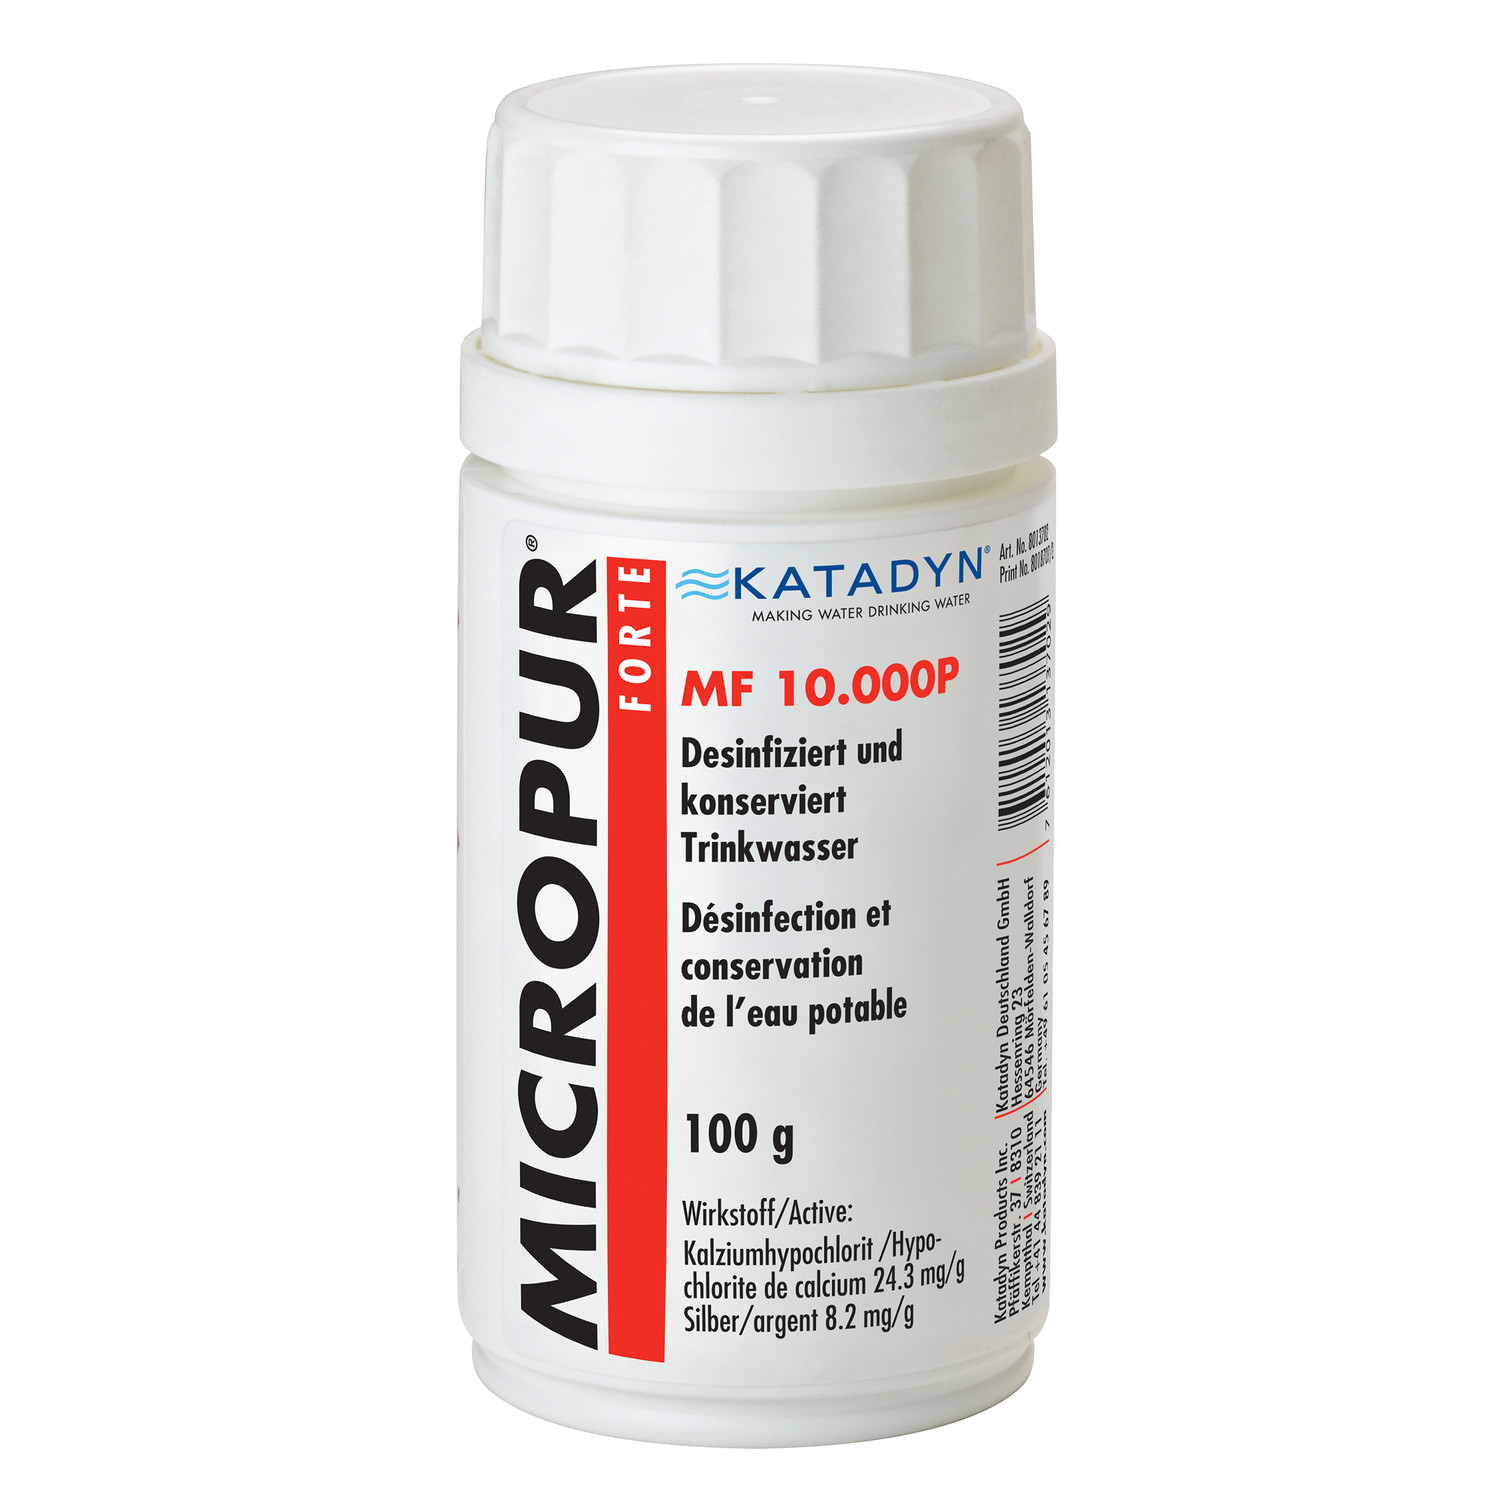 Katadyn Micropur Forte Wasserdesinfektion MF 10.000P Pulver